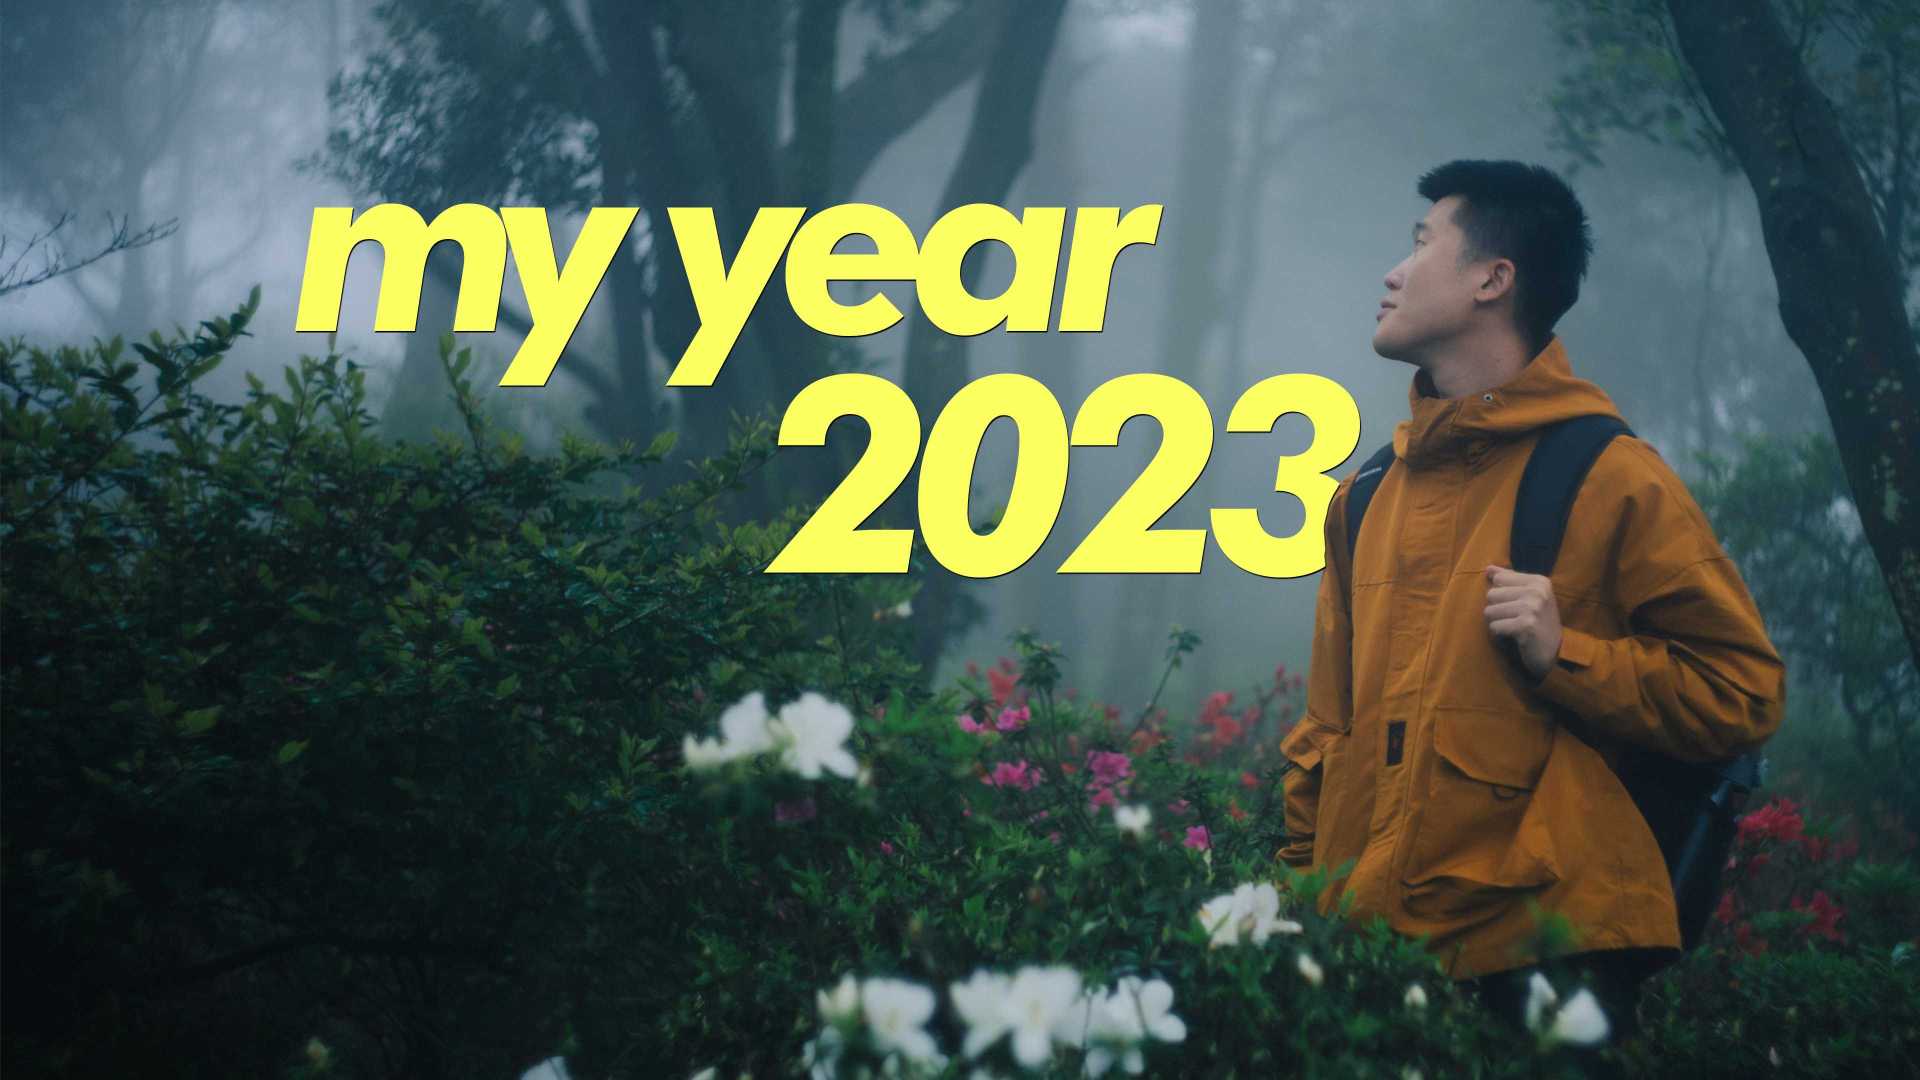 我的年度日记【My Year 2023】不再追求意义，这样我们才比较好过